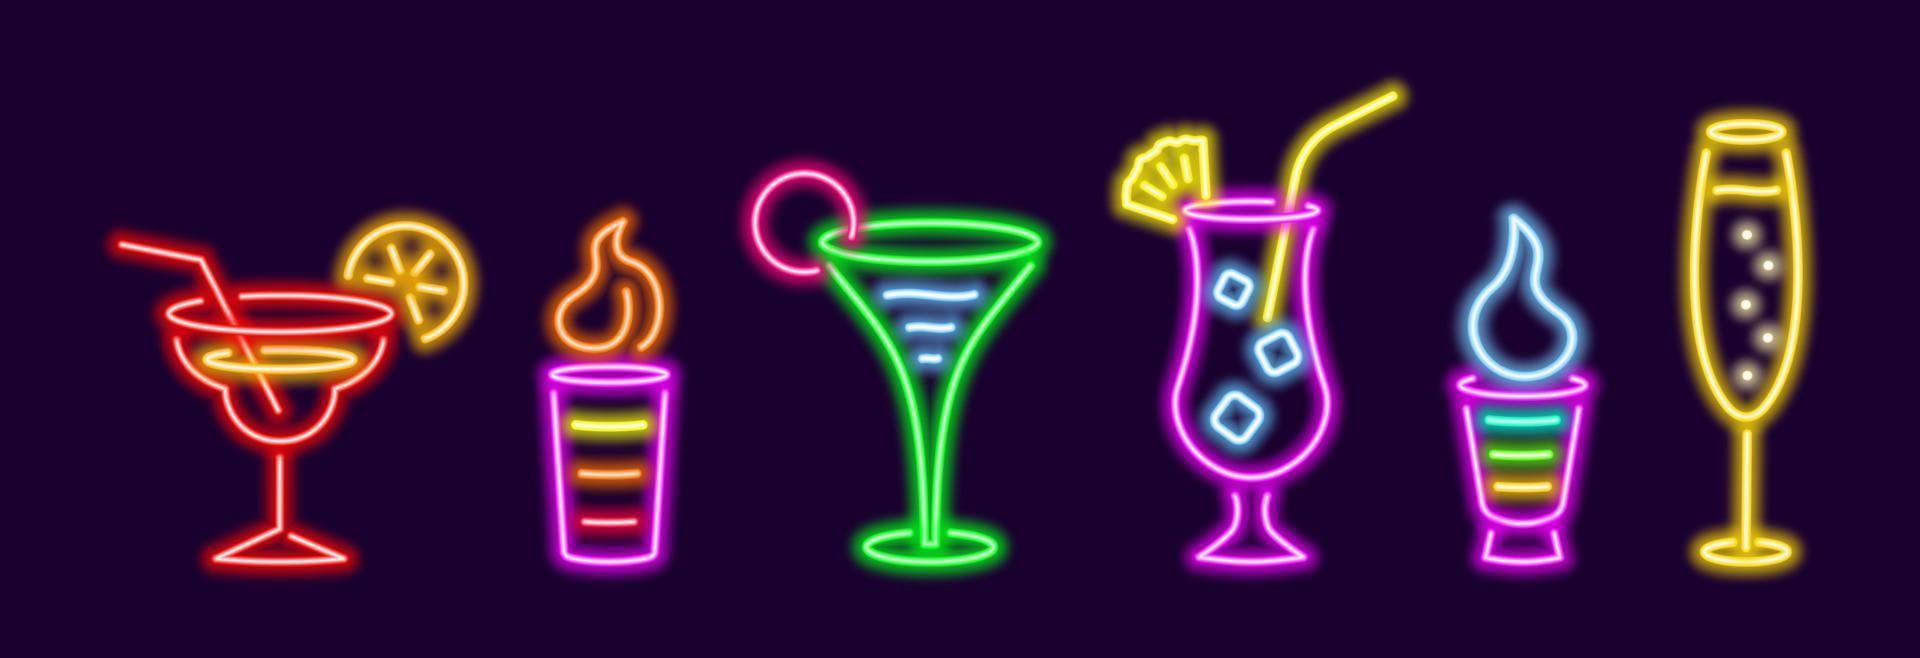 neon kleurrijke populaire cocktails set. gloeiende b52 met Ierse room met figuurschuim in glazen beker. elite champagne met bubbels in glas. heldere pina colada met ananas vectorwig vector